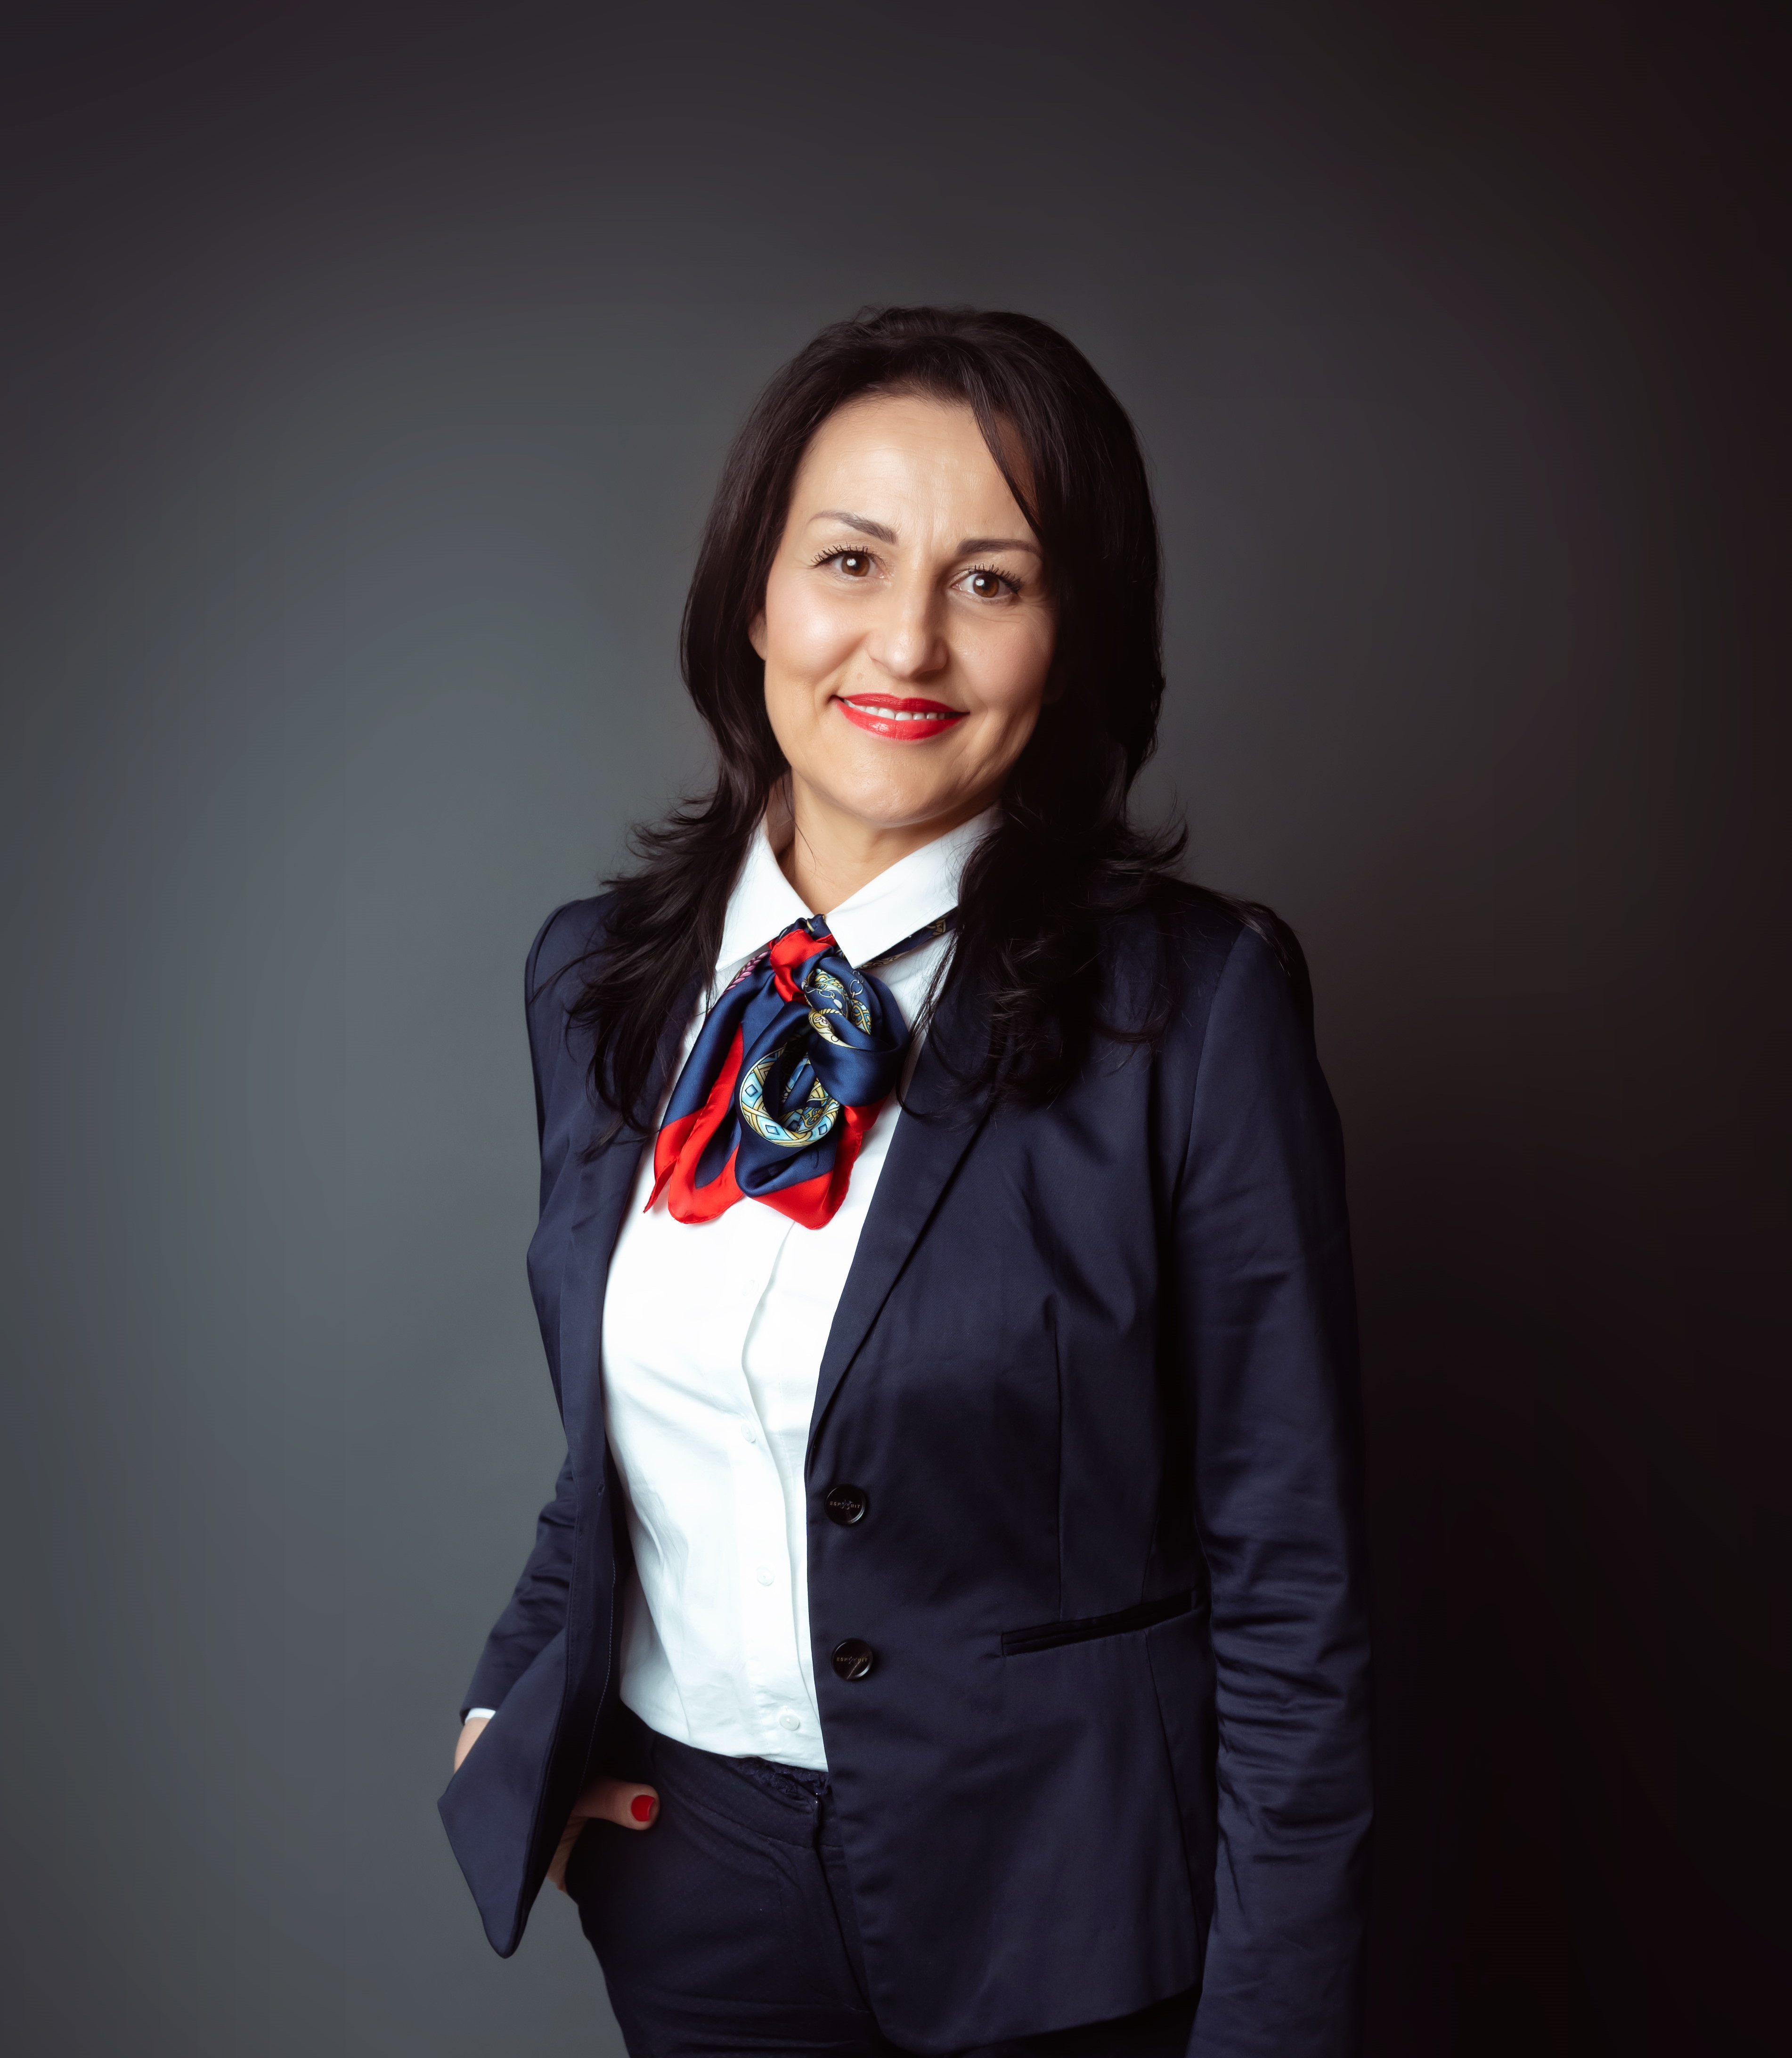 Ms. Stojanka Supić